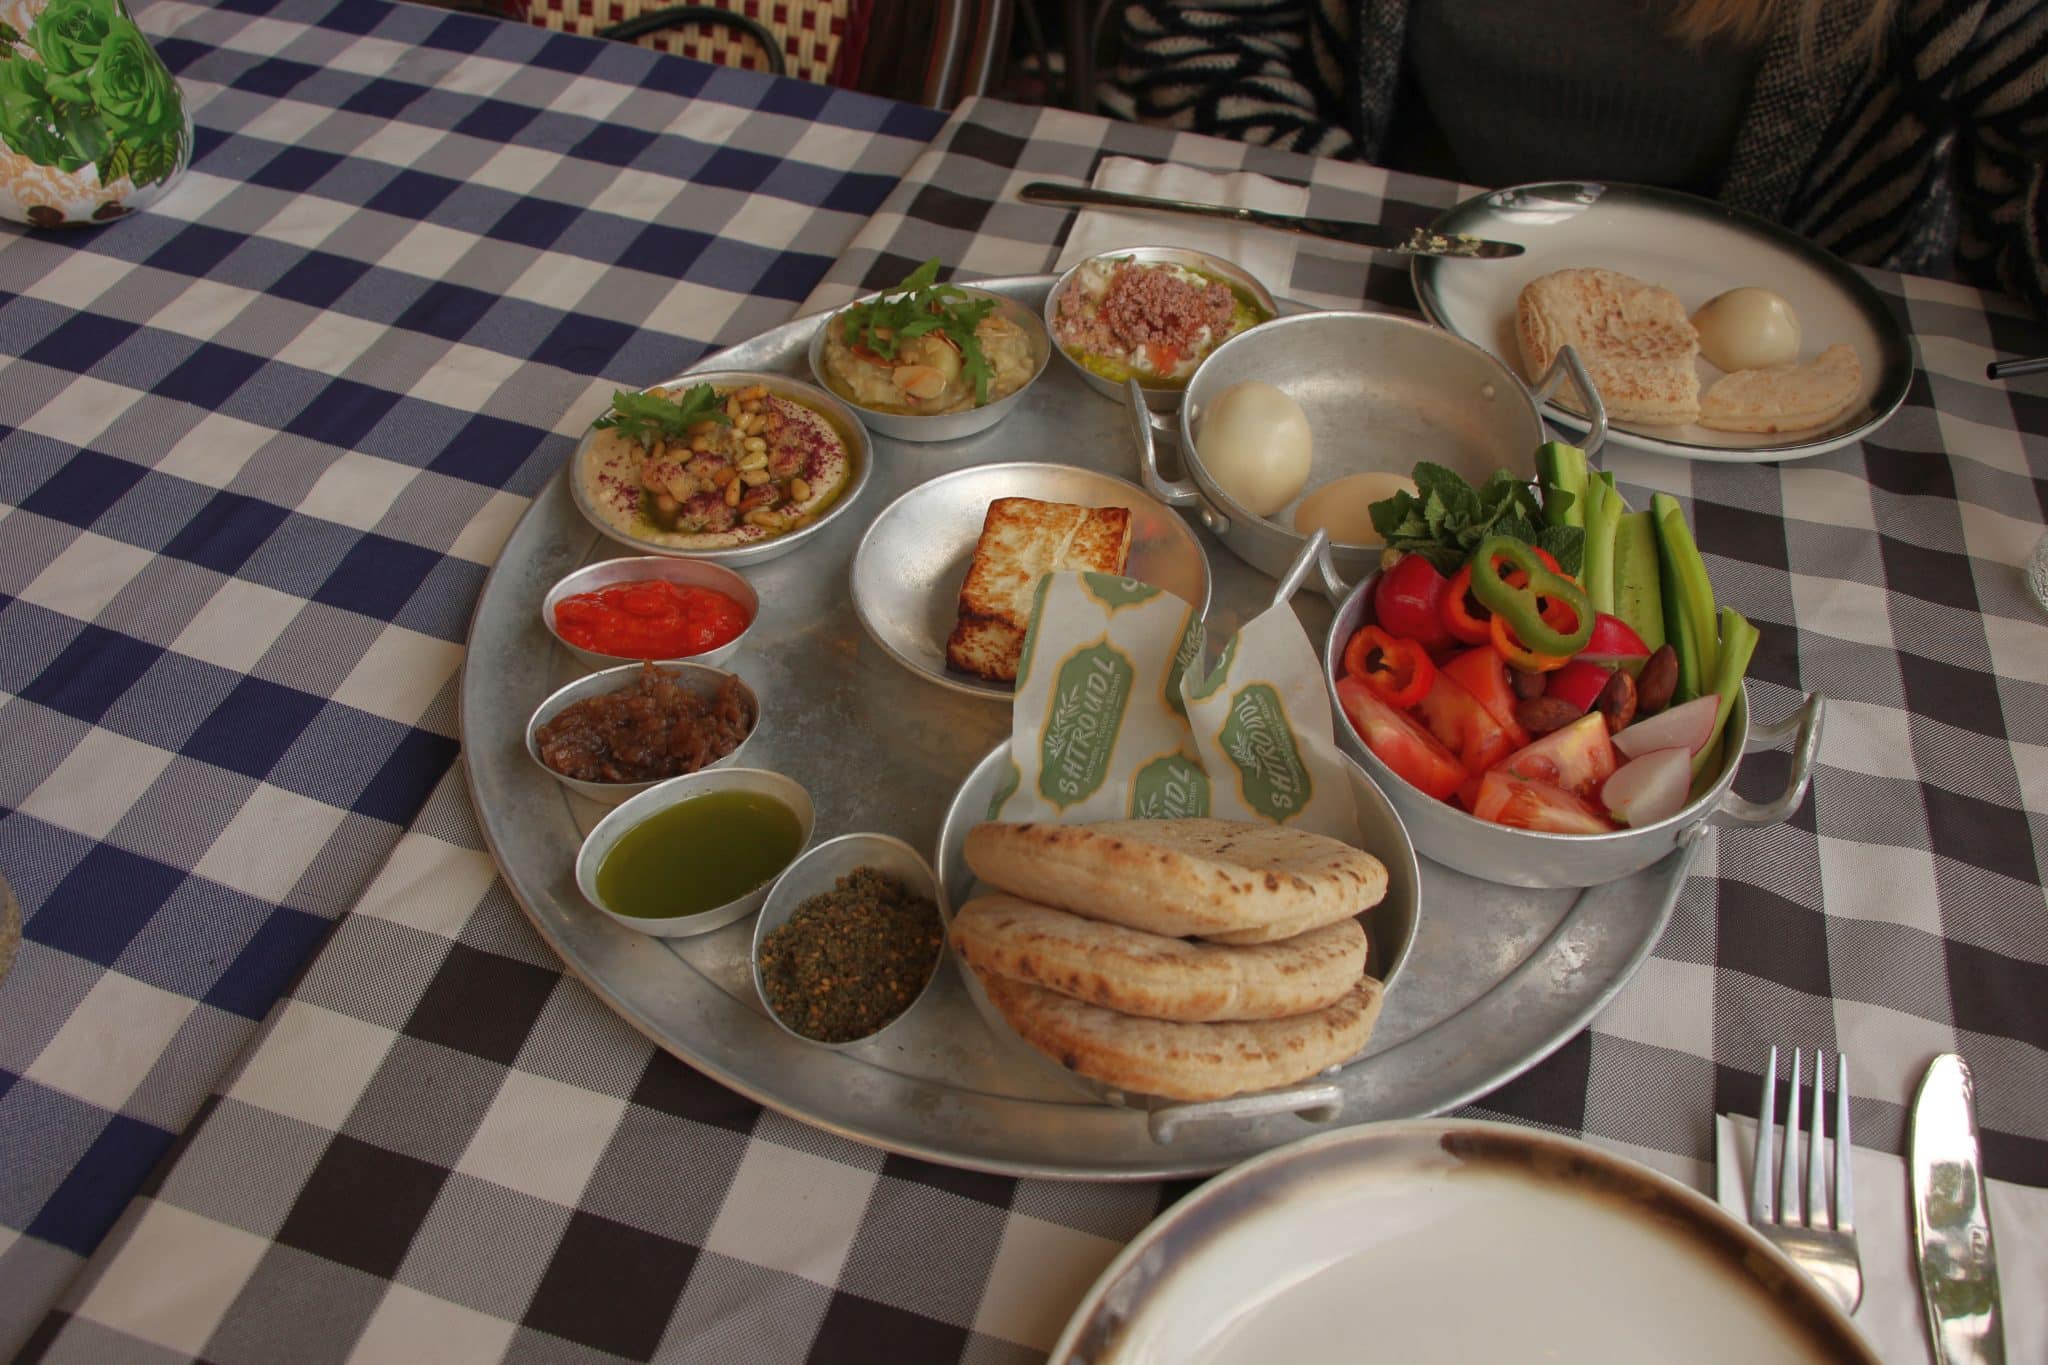 ארוחת הבוקר של סבתא היא ארוחת בוקר ערבית המוגשת במגש ענק ועליו שפע דברים טובים וטעימים. צילום איילת קרבצקי